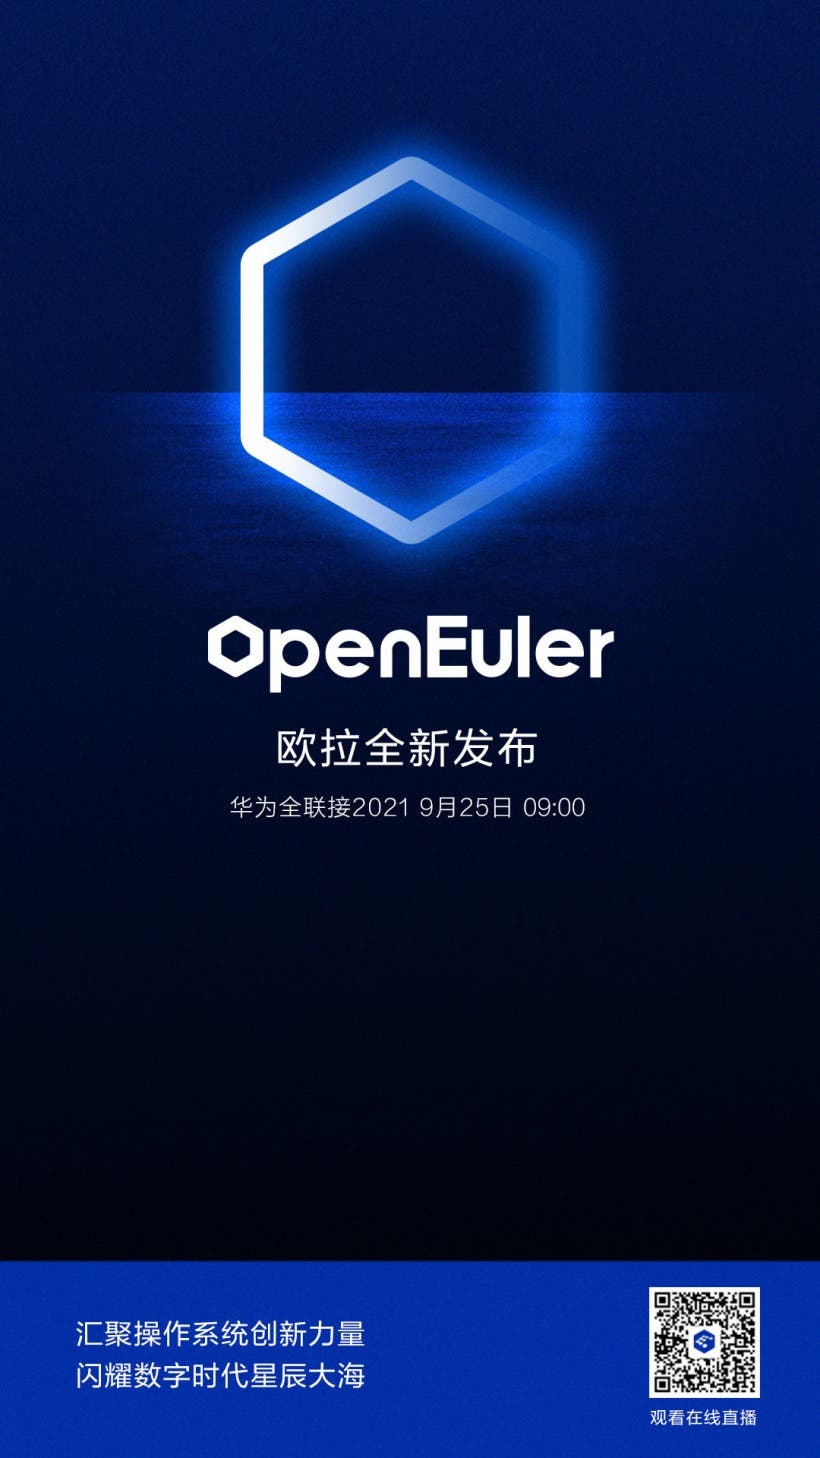 Huawei openEuler